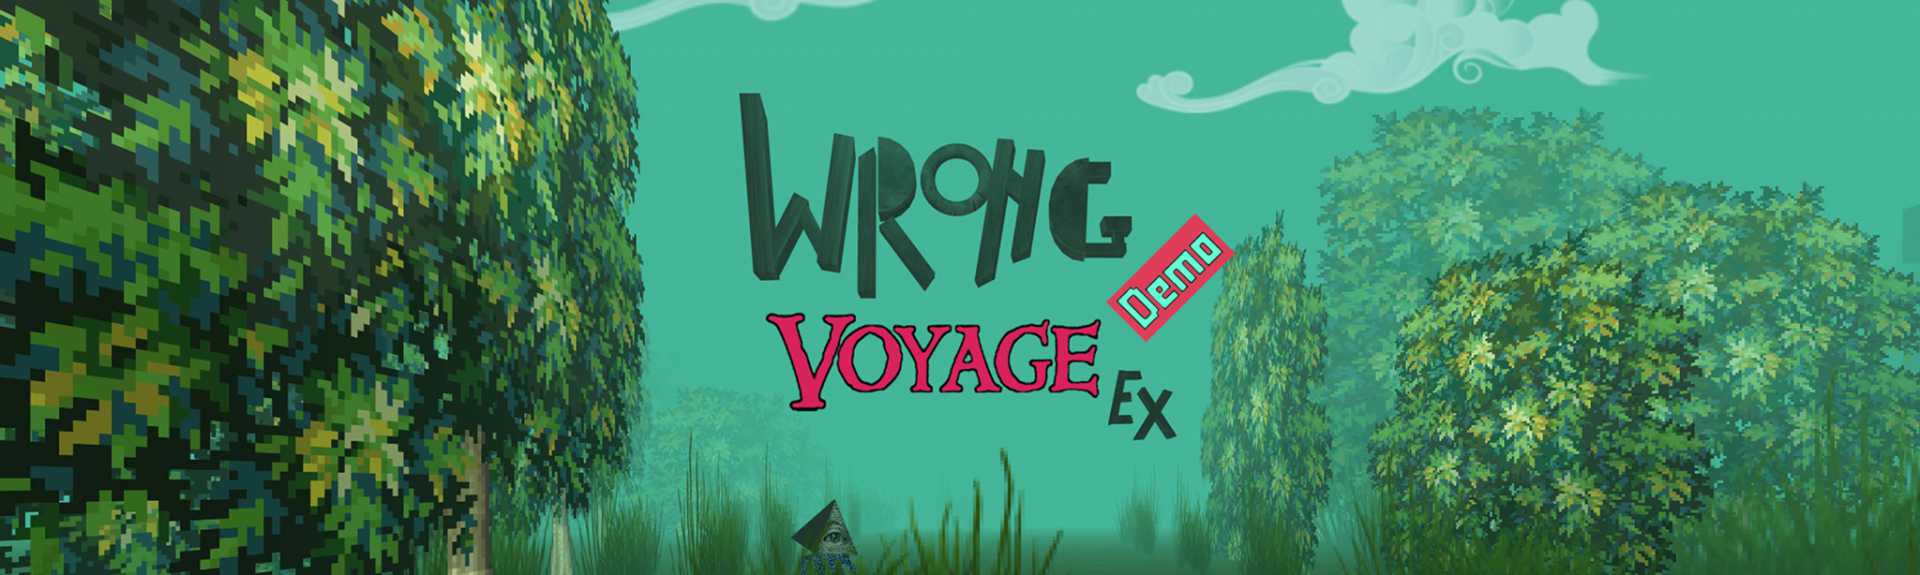 Wrong Voyage Ex Demo